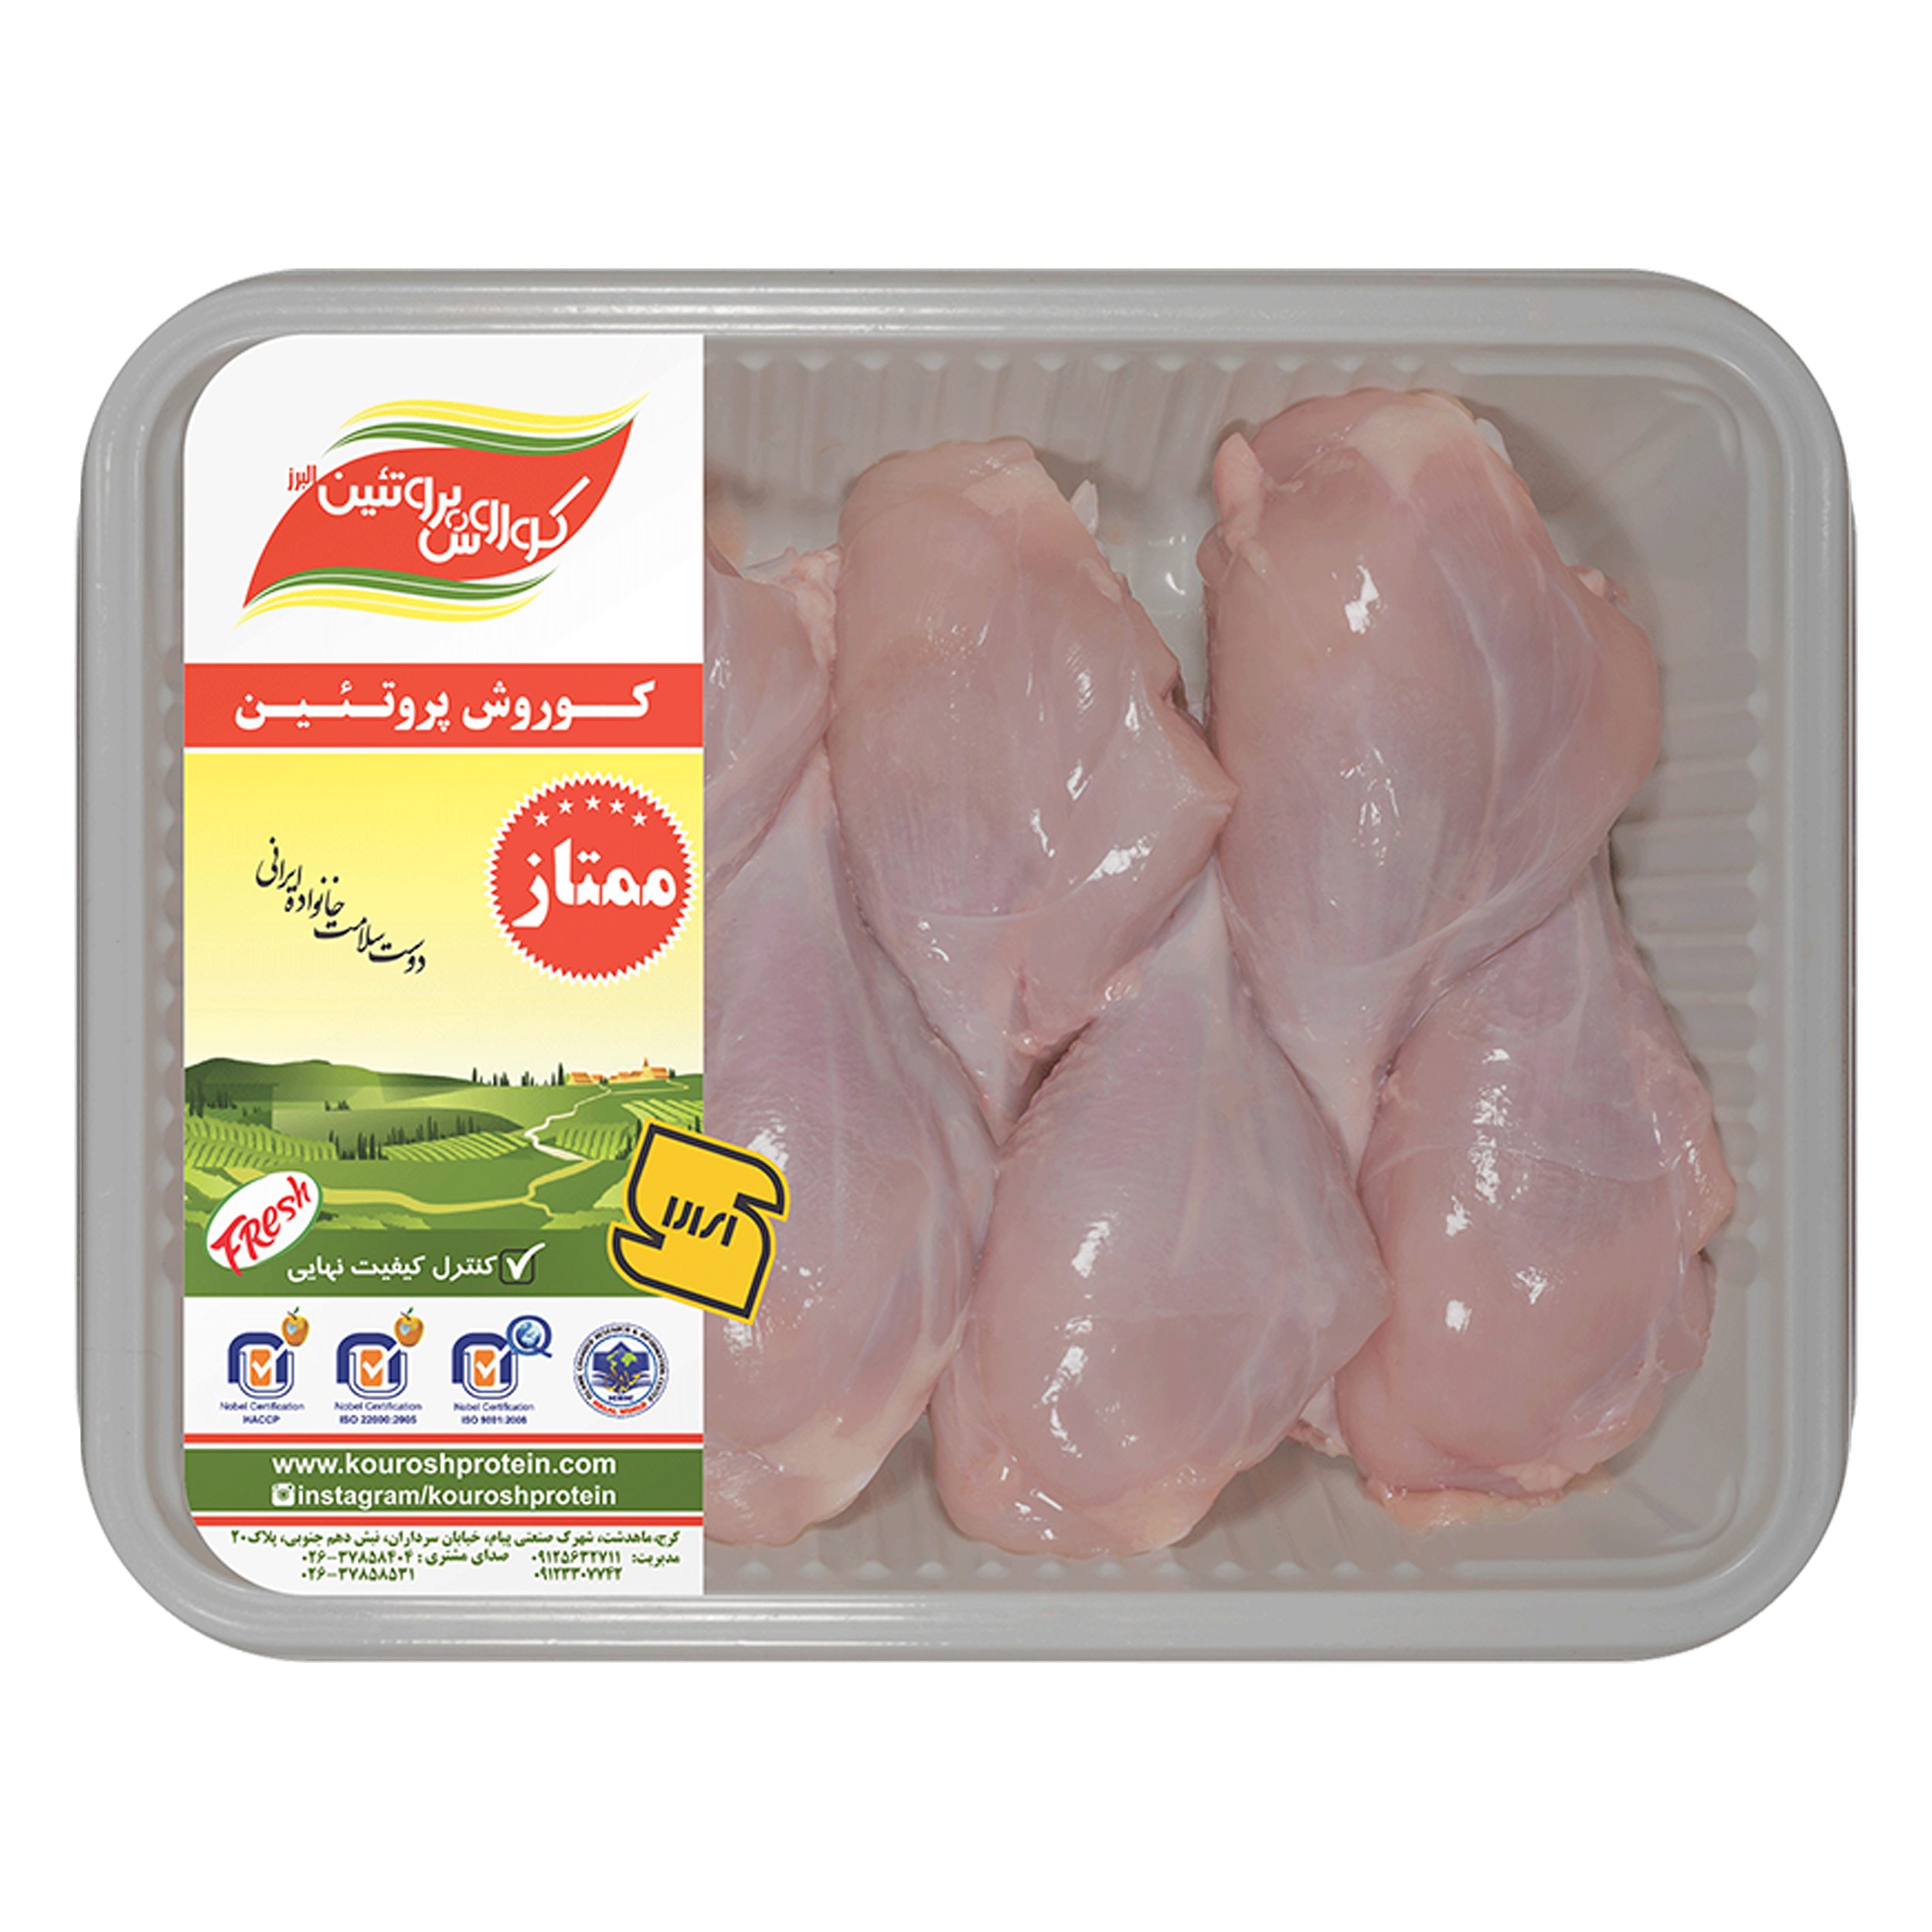 ساق مرغ بدون پوست کوروش پروتئین البرز مقدار 900 گرم